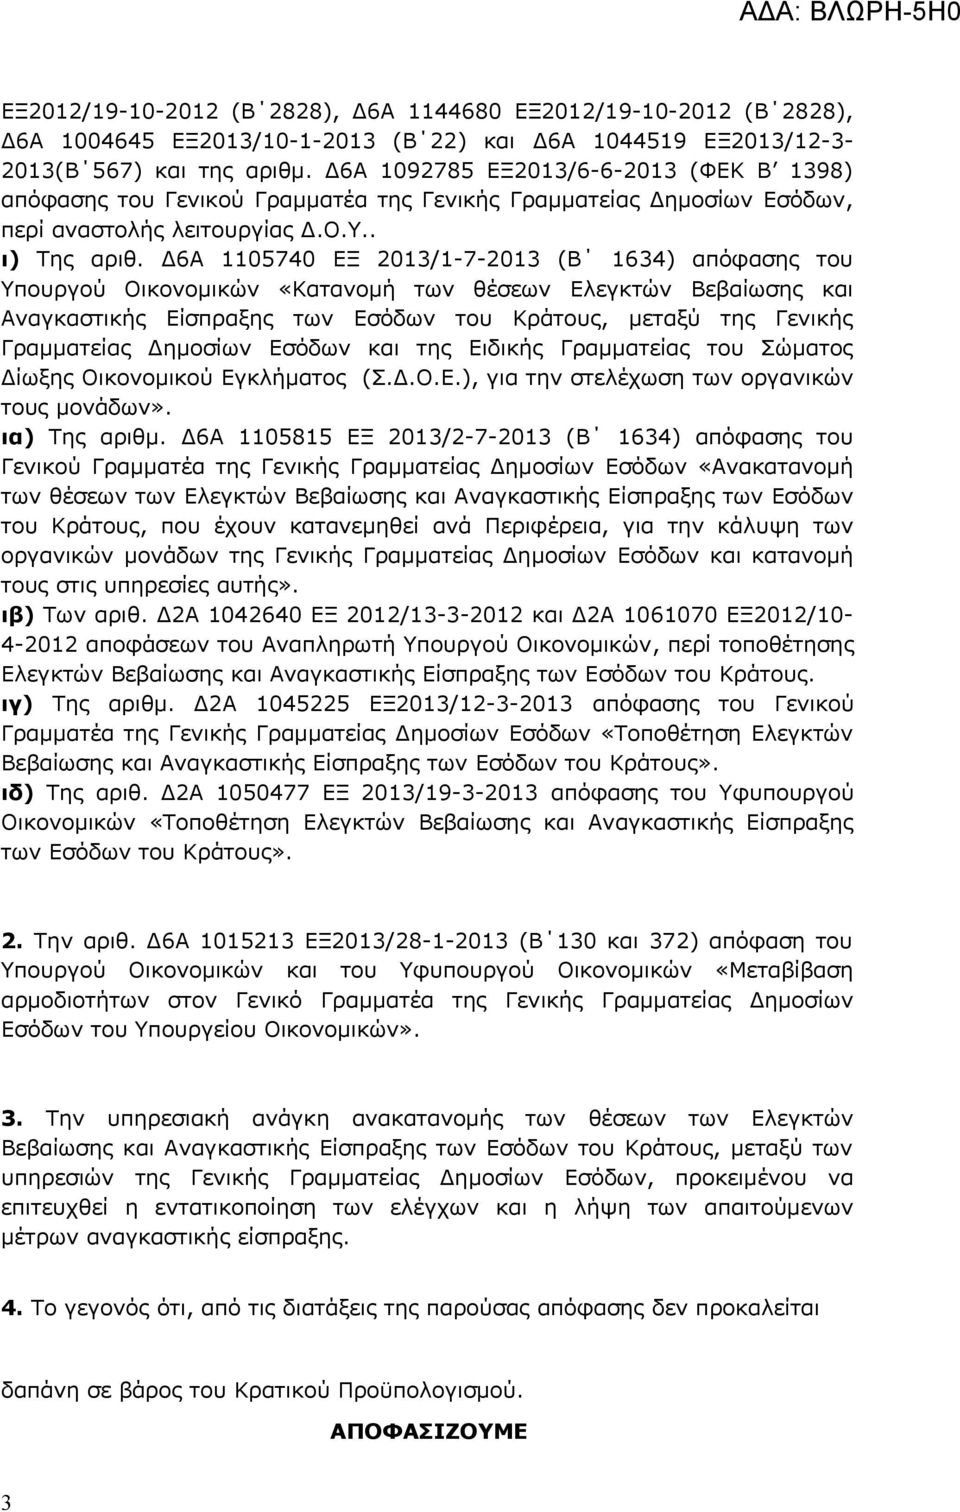 Δ6Α 1105740 ΕΞ 2013/1-7-2013 (Β 1634) απόφασης του Υπουργού Οικονομικών «Κατανομή των θέσεων Ελεγκτών Βεβαίωσης και Αναγκαστικής Είσπραξης των Εσόδων του Κράτους, μεταξύ της Γενικής Γραμματείας